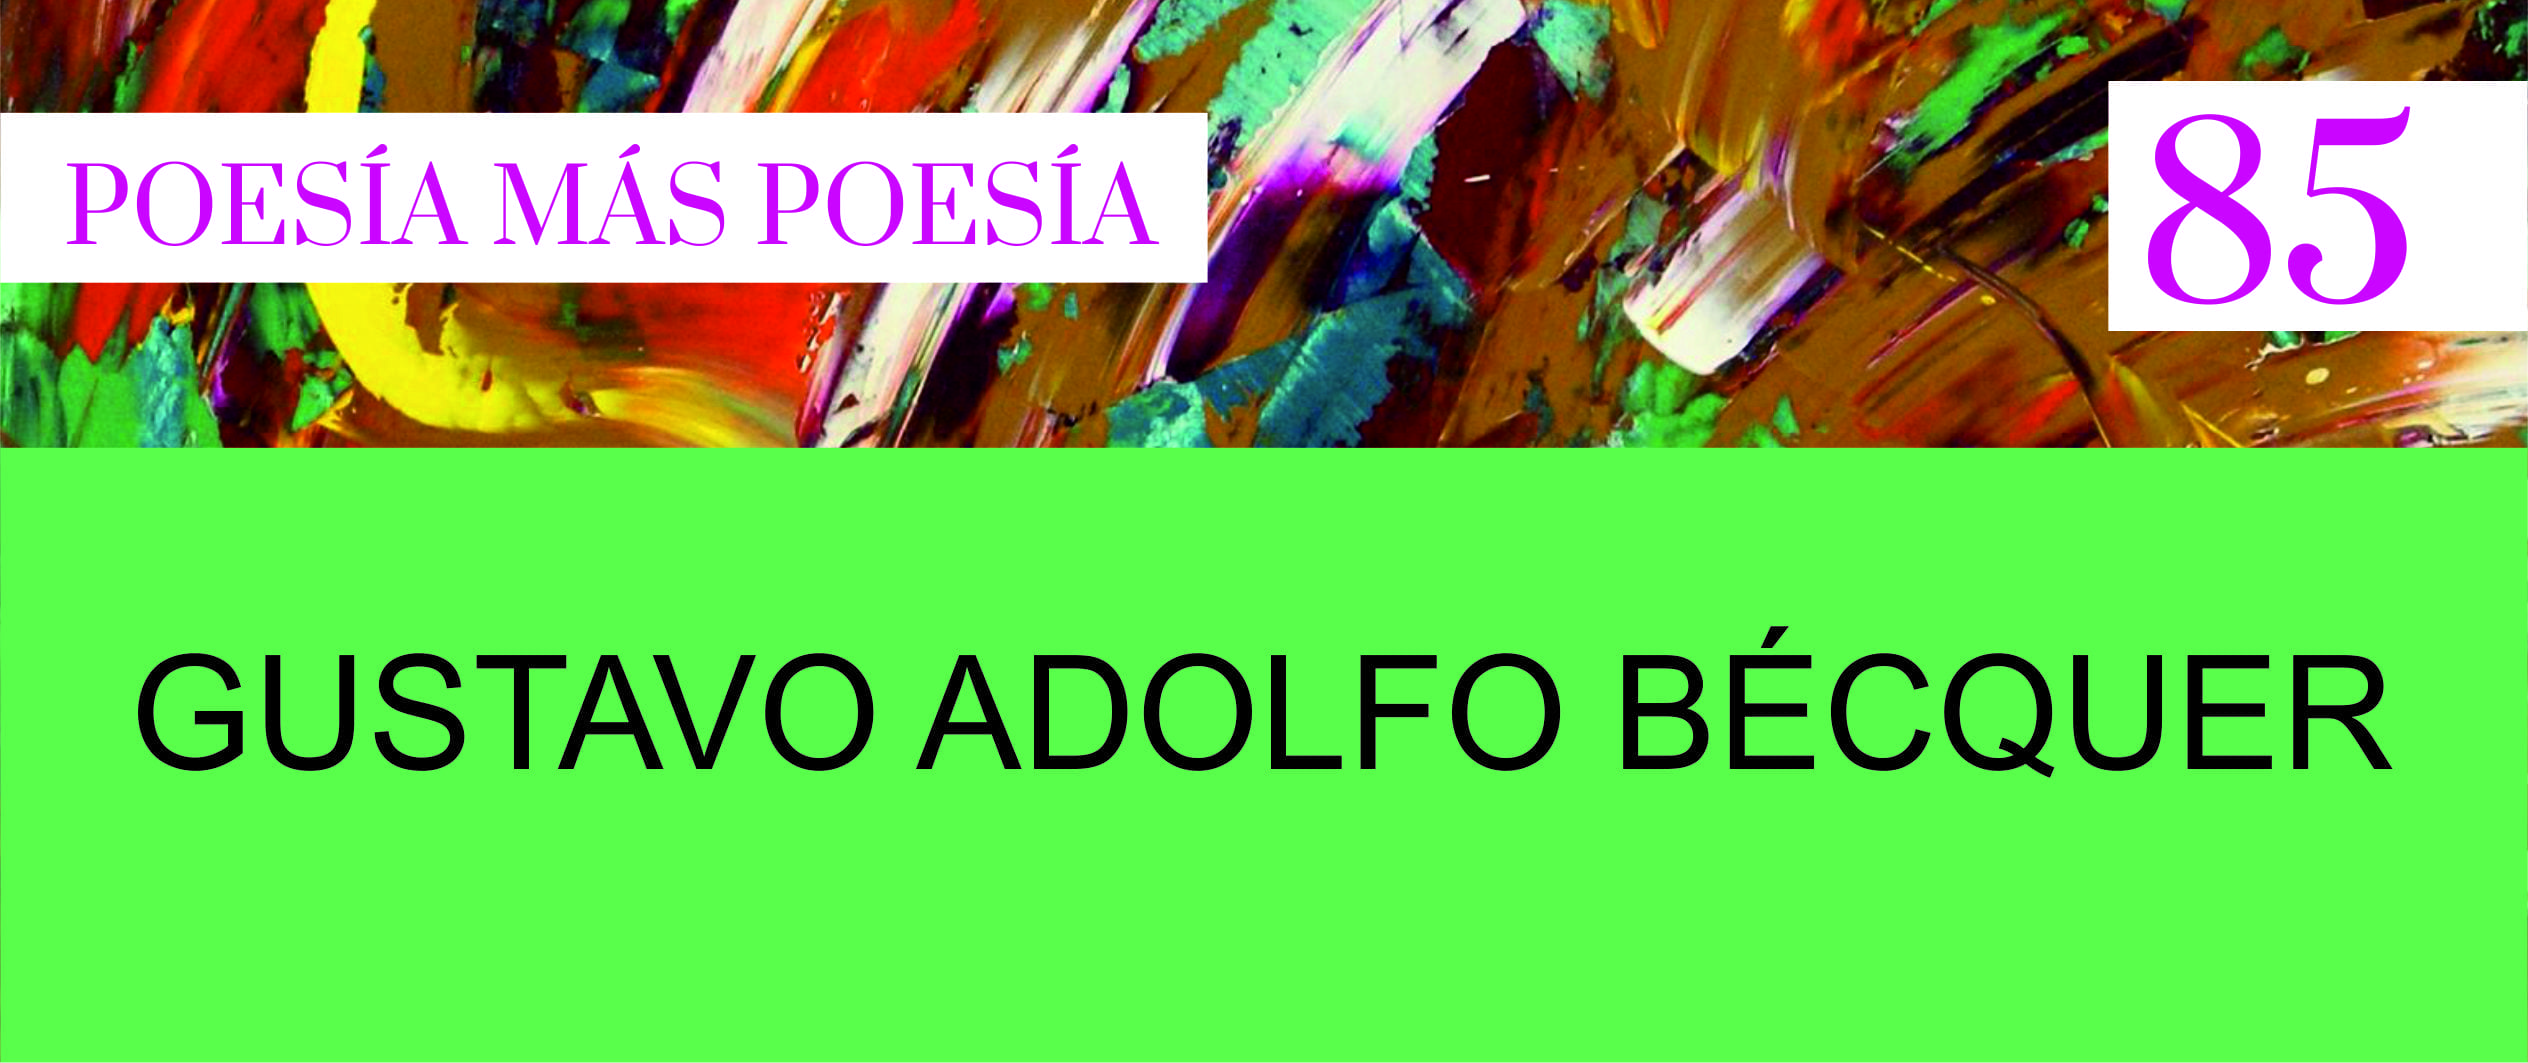 PORTADAS REVISTA POESIA MAS POESIA PARA SLIDER WEB 2 - Poesia Online